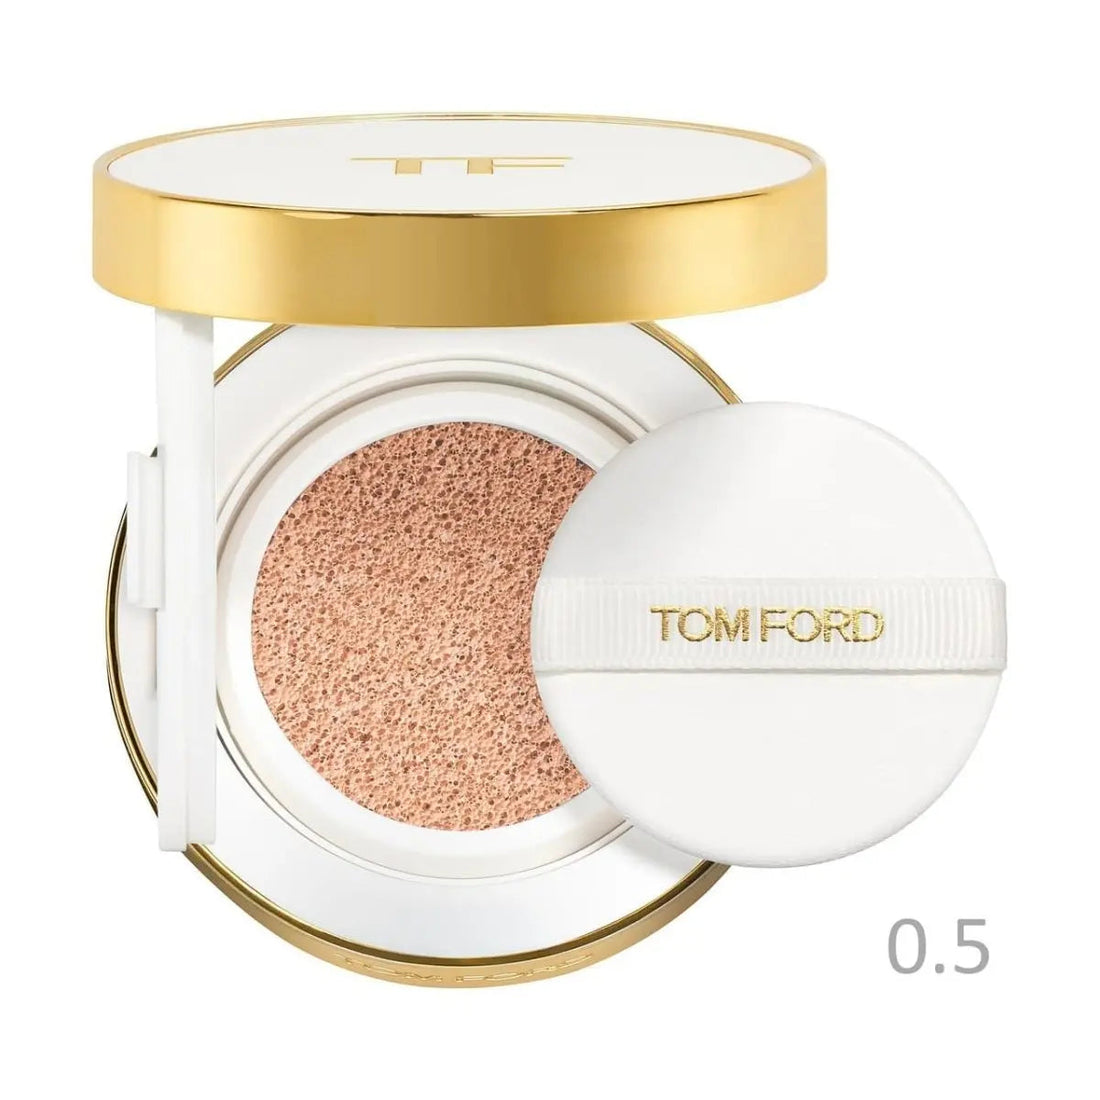 Tom Ford Tom Ford Glow Tone Up base de maquillaje hidratante compacta cojín acolchado Spf40 porcelana